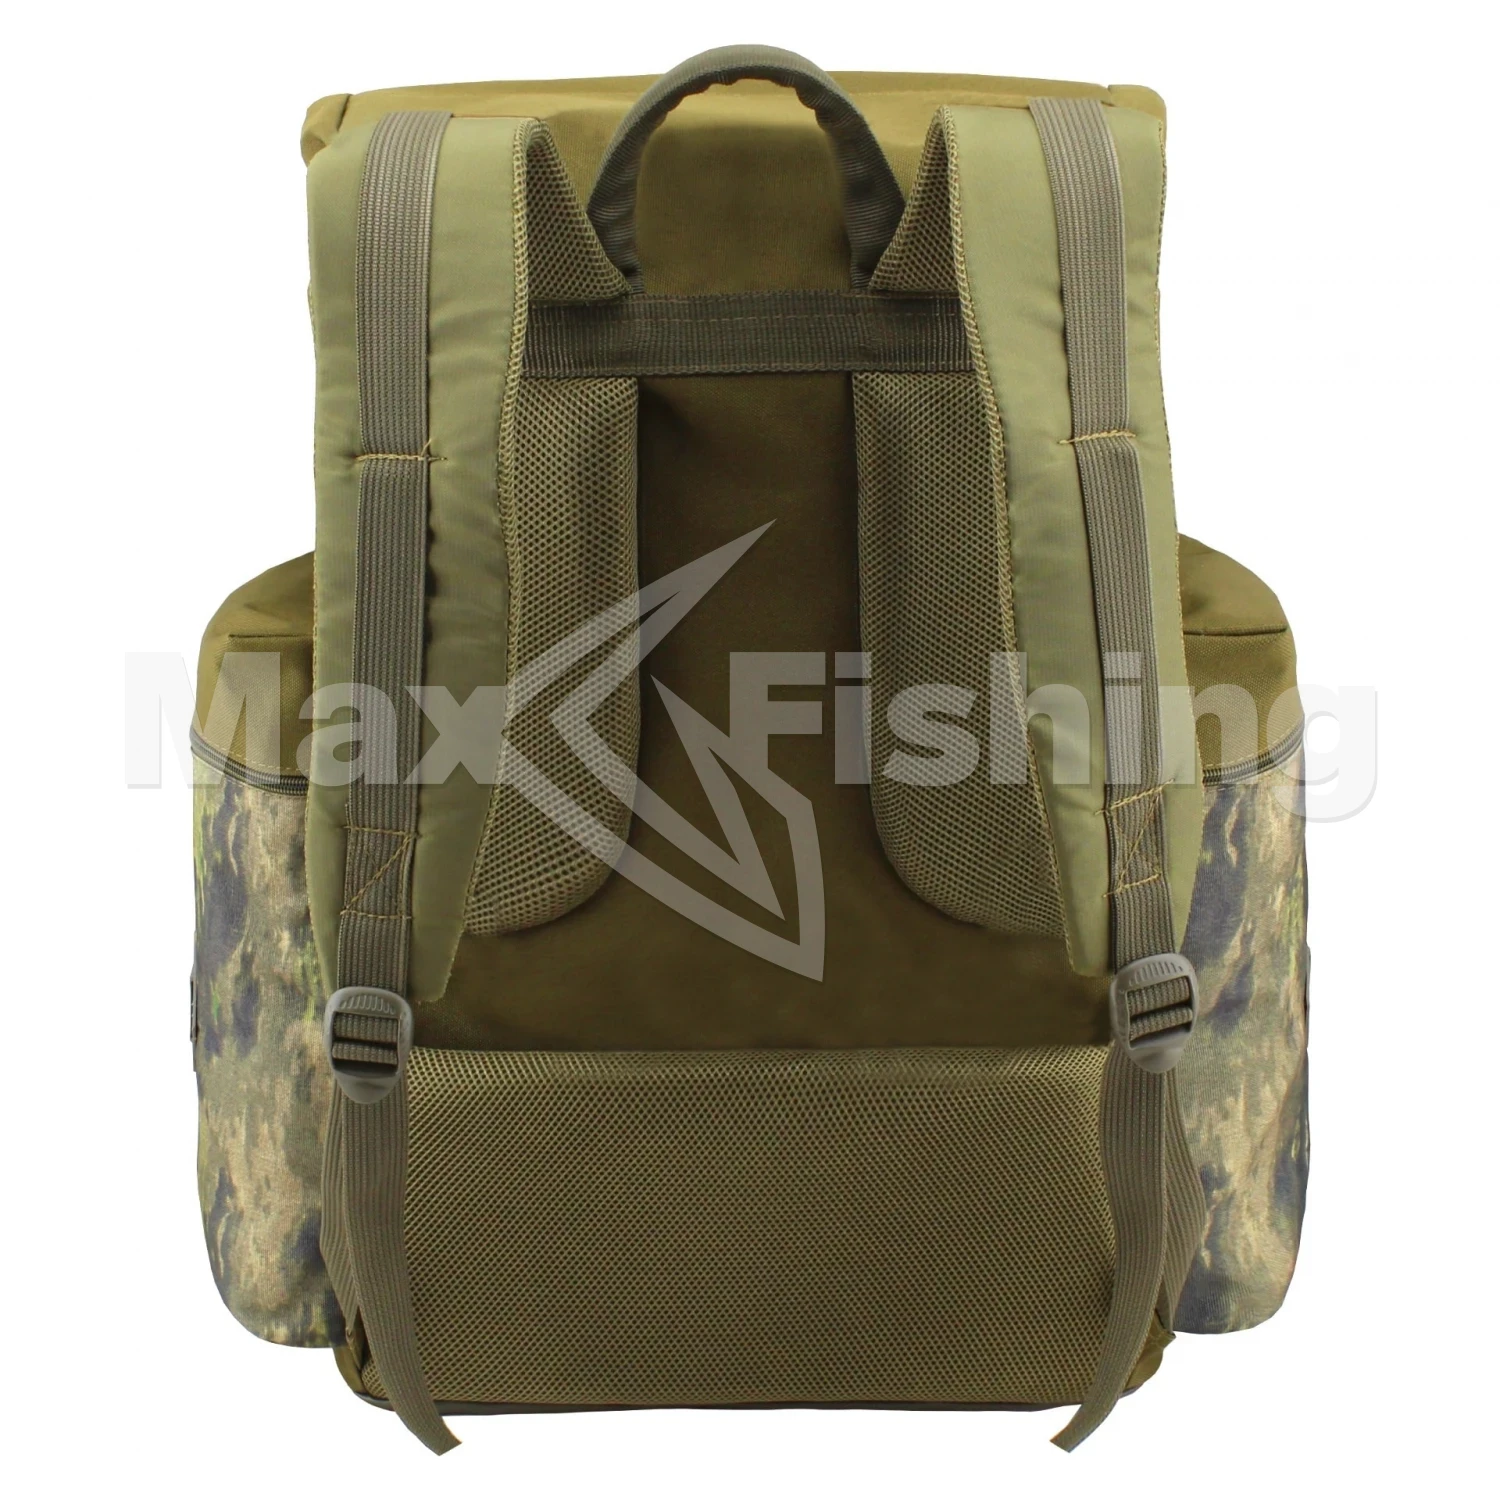 Рюкзак рыболовный Aquatic РД-04 хаки, камуфляж